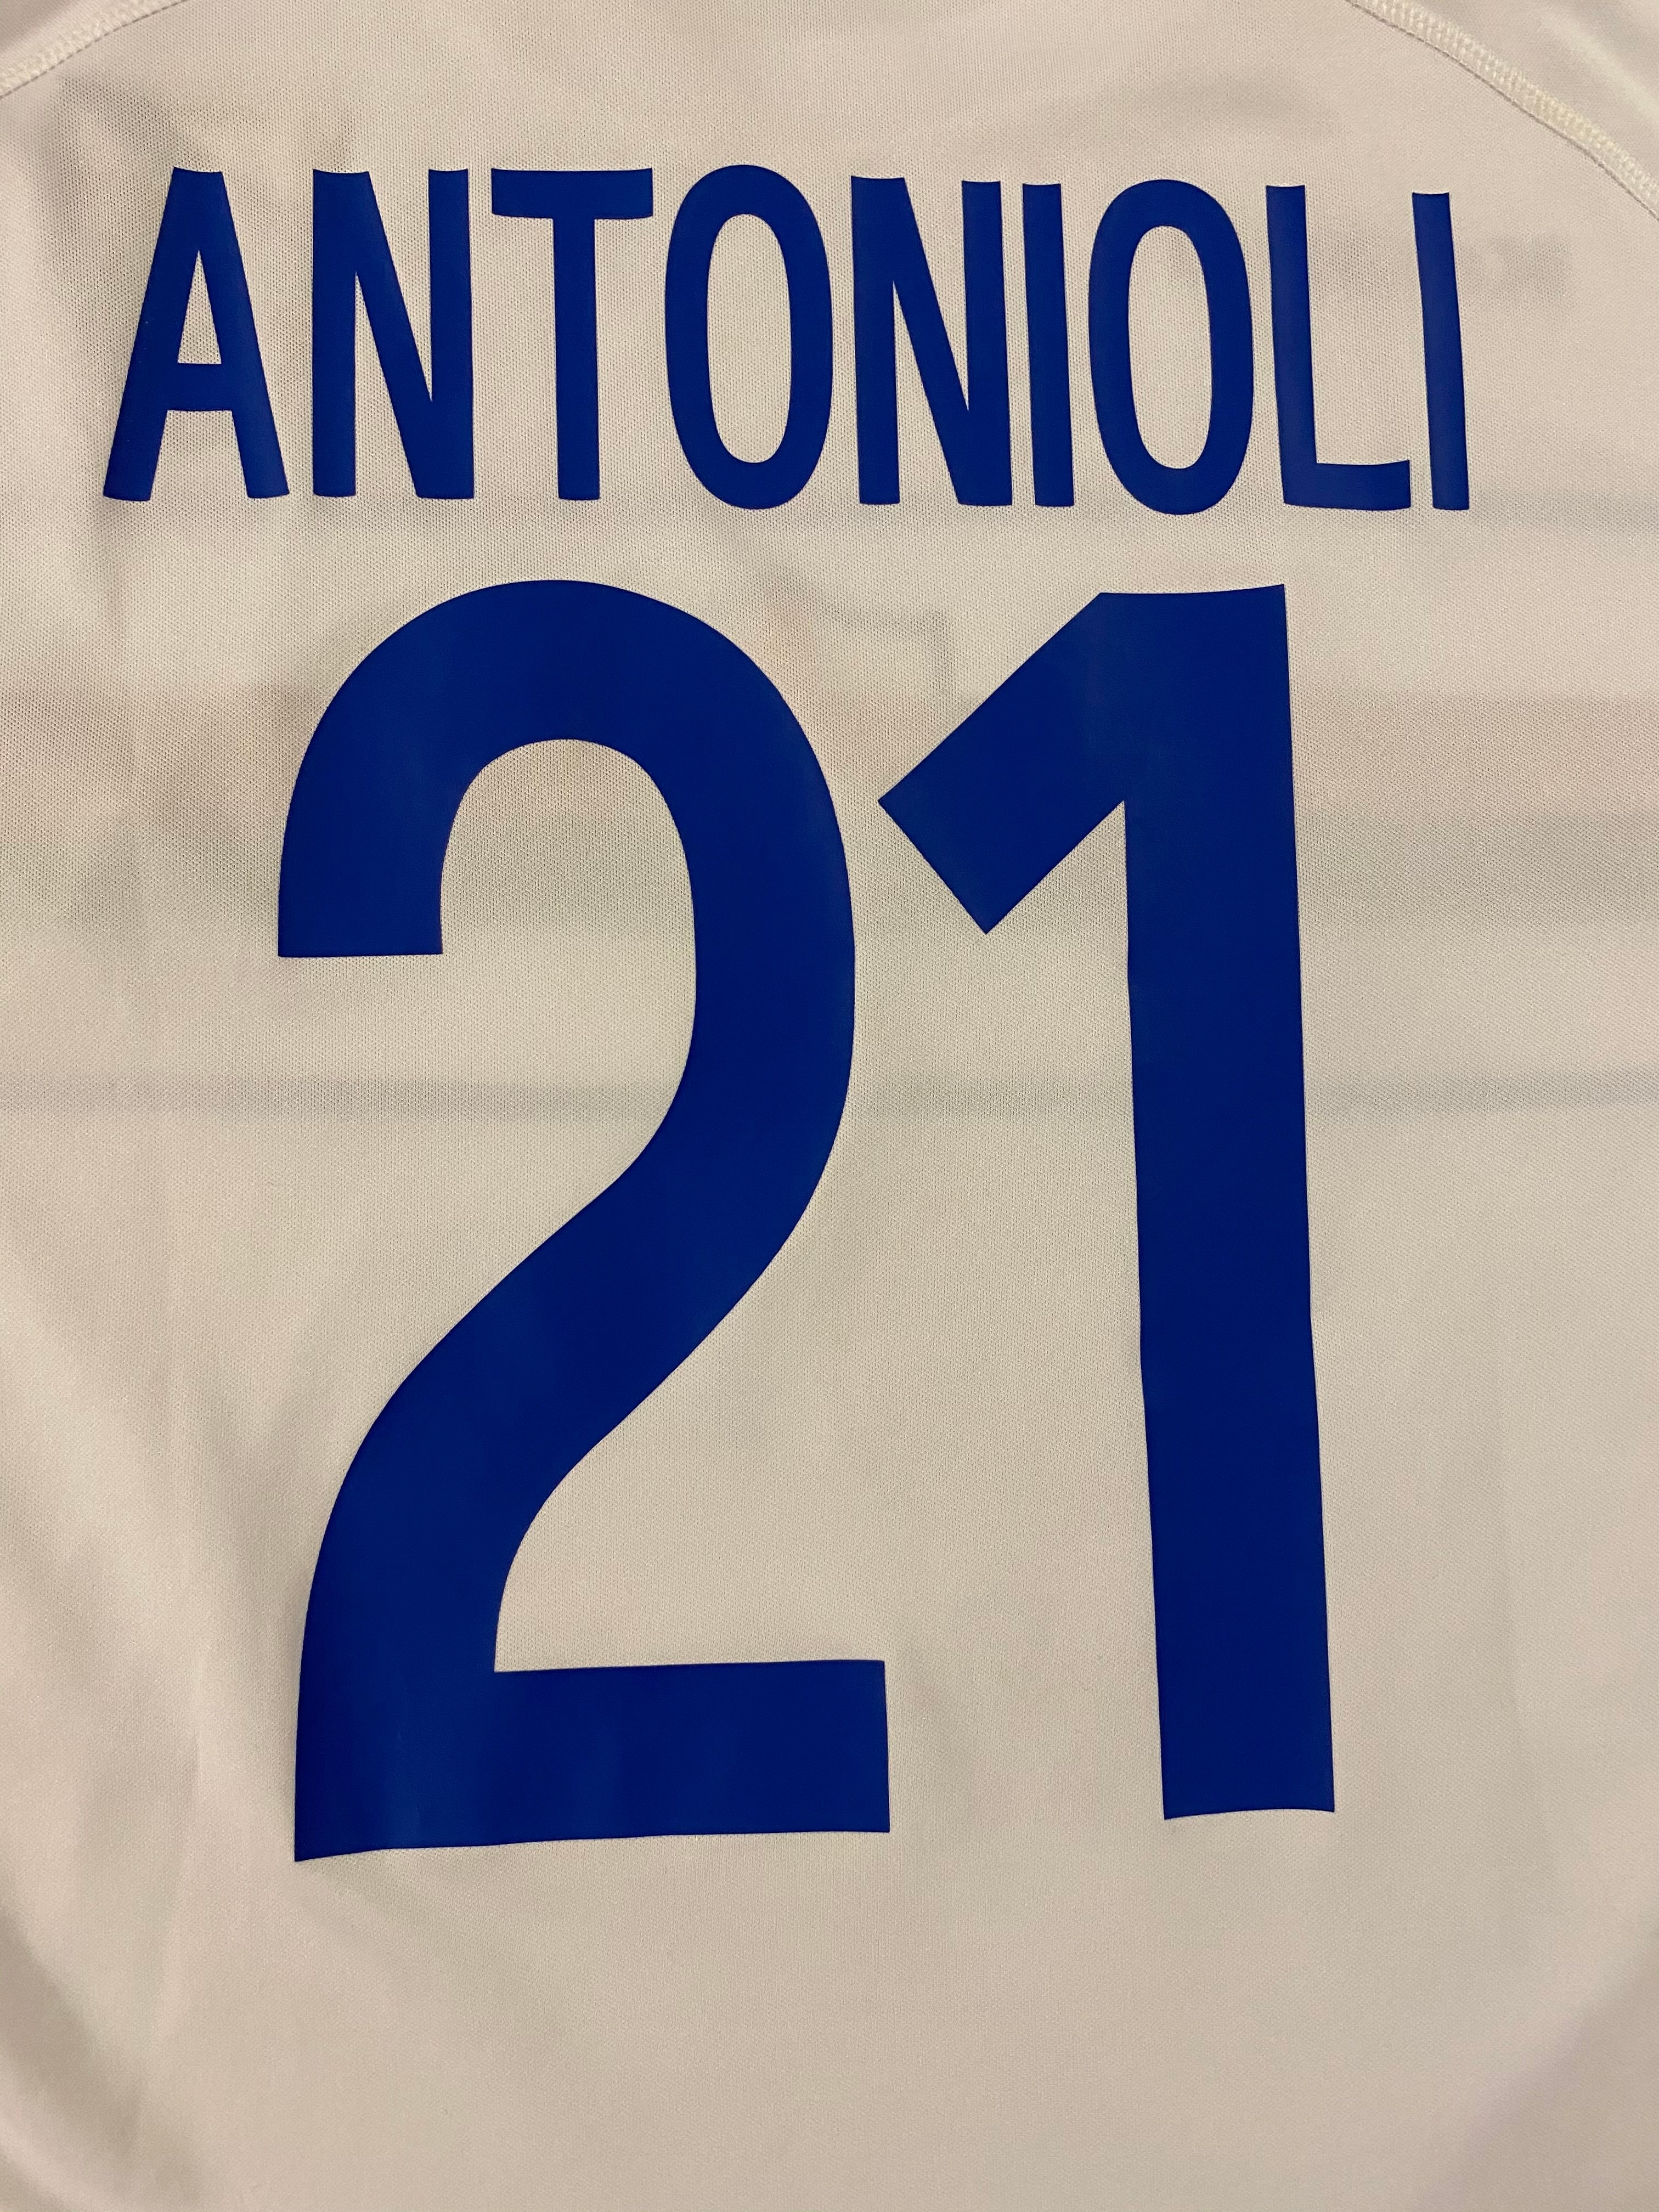 2005/06 Sampdoria *Problème joueur* Coupe UEFA GK S/S Maillot Antonioli #21 (M) 7/10